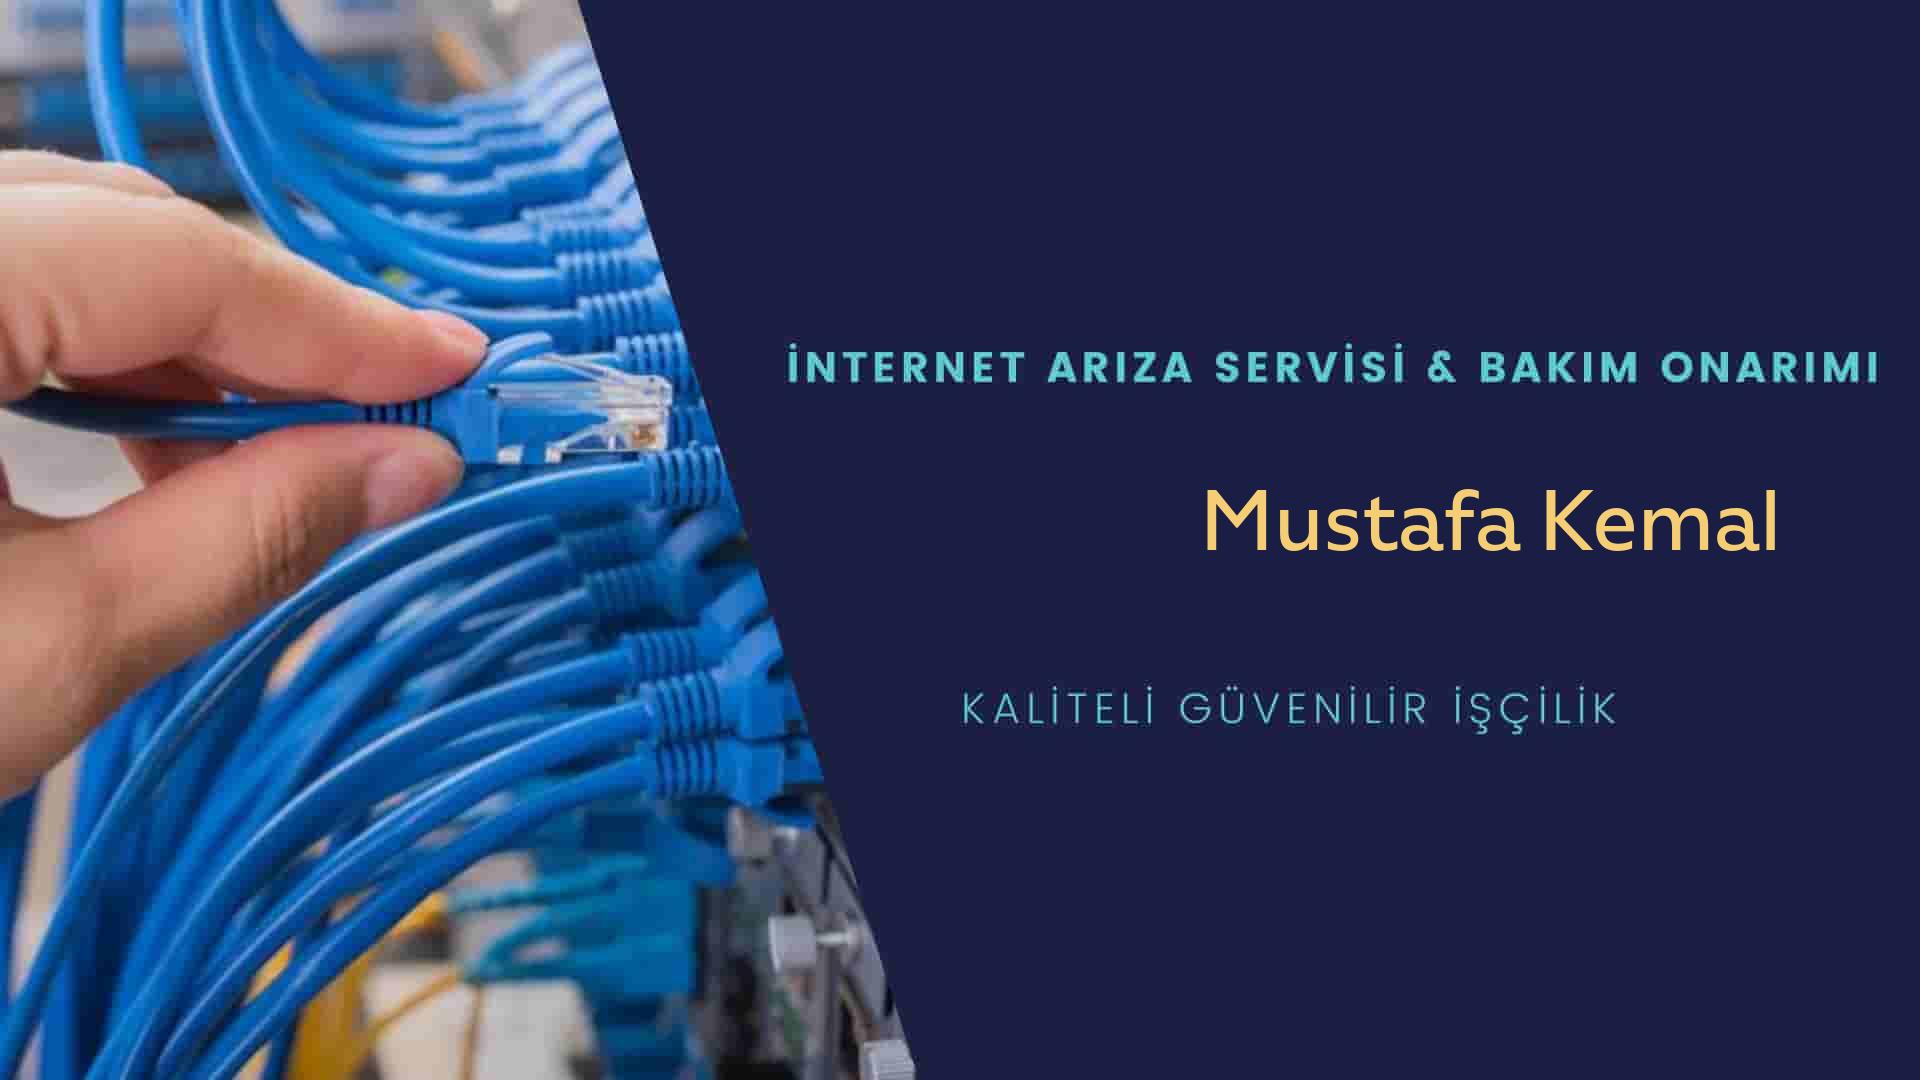 Mustafa Kemal  internet kablosu çekimi yapan yerler veya elektrikçiler mi? arıyorsunuz doğru yerdesiniz o zaman sizlere 7/24 yardımcı olacak profesyonel ustalarımız bir telefon kadar yakındır size.